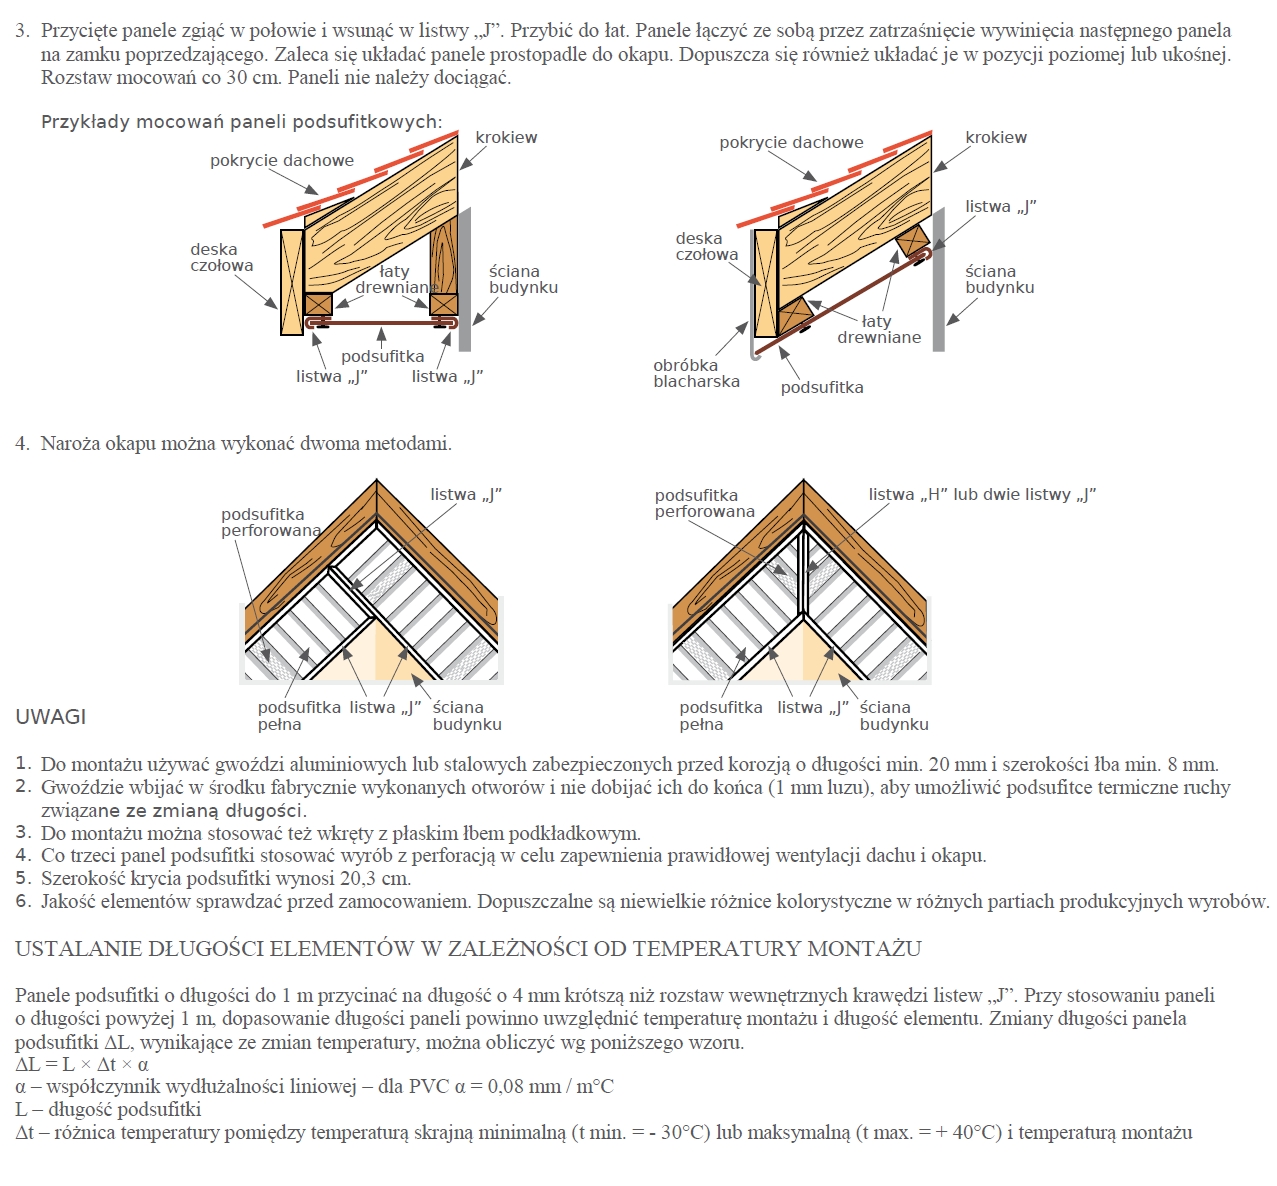 Instrukcja montażu podsufitki podbitki dachowej Izabella str2